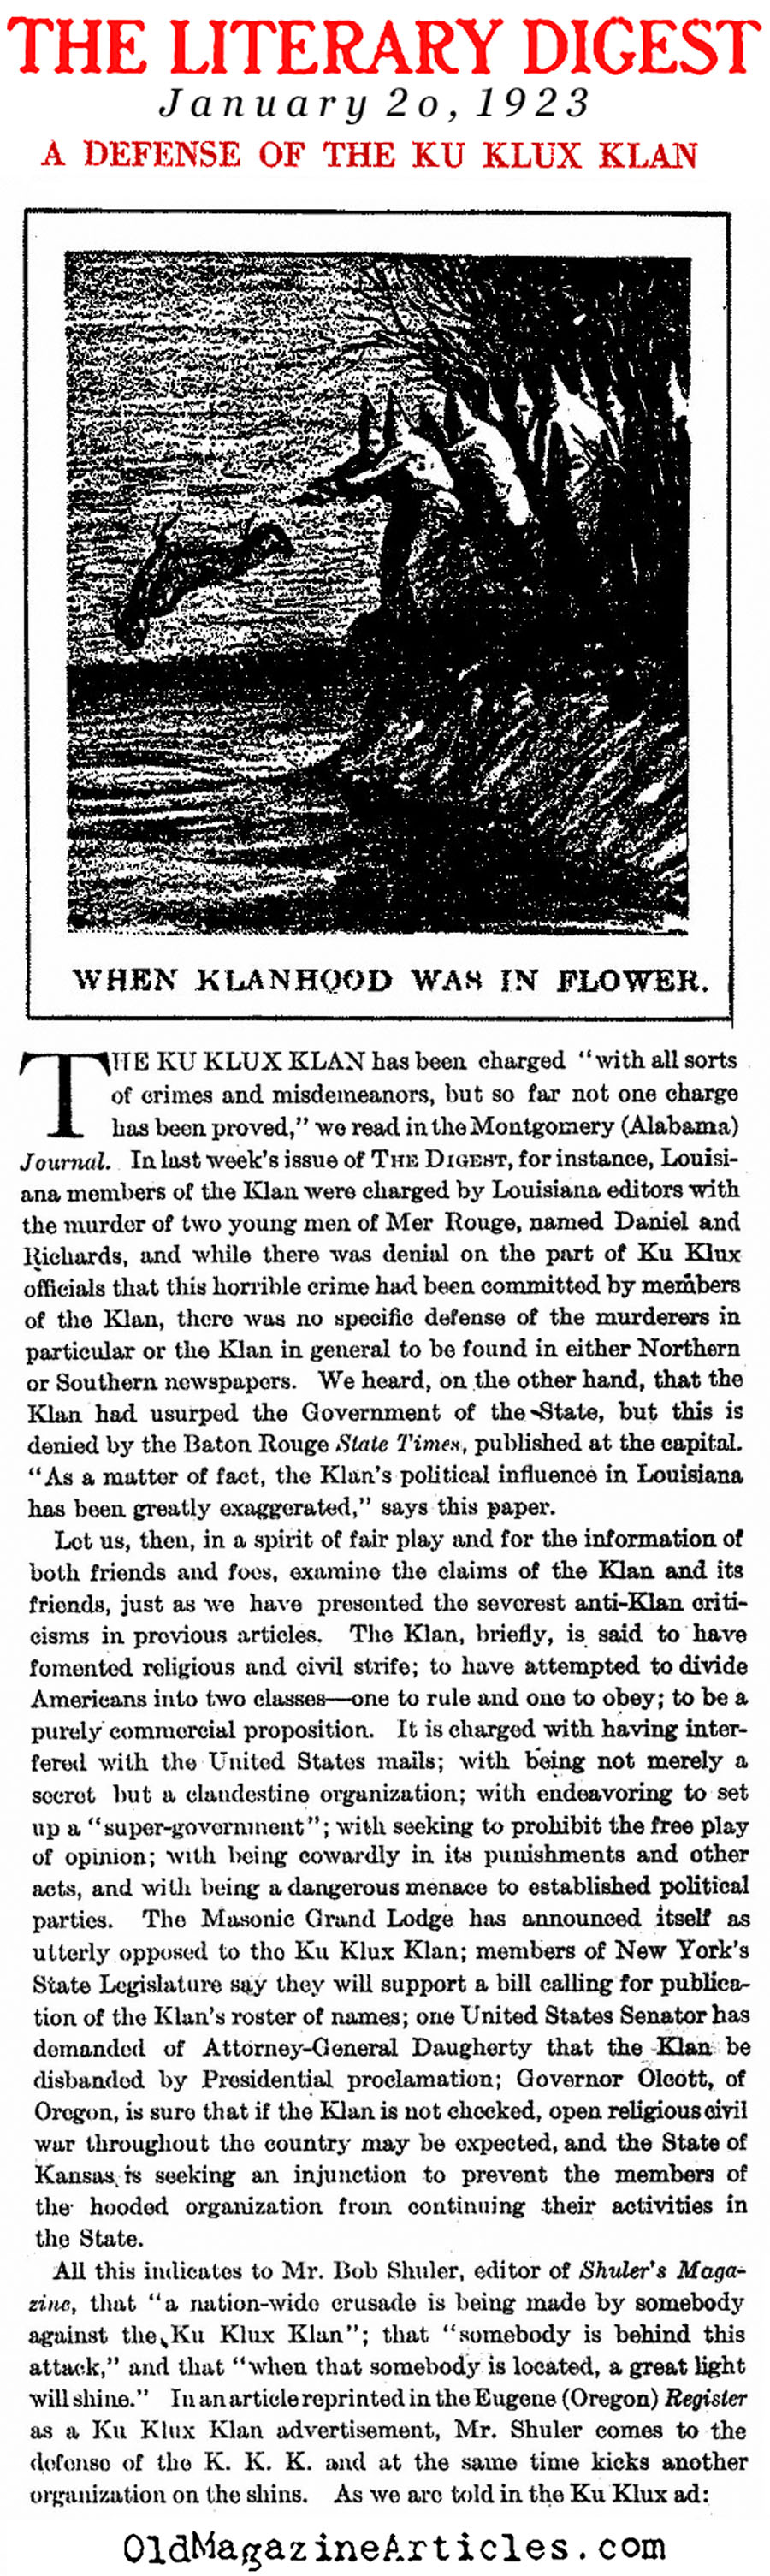 Lofty Words Printed on Behalf of the Klan (The Literary Digest, 1923)